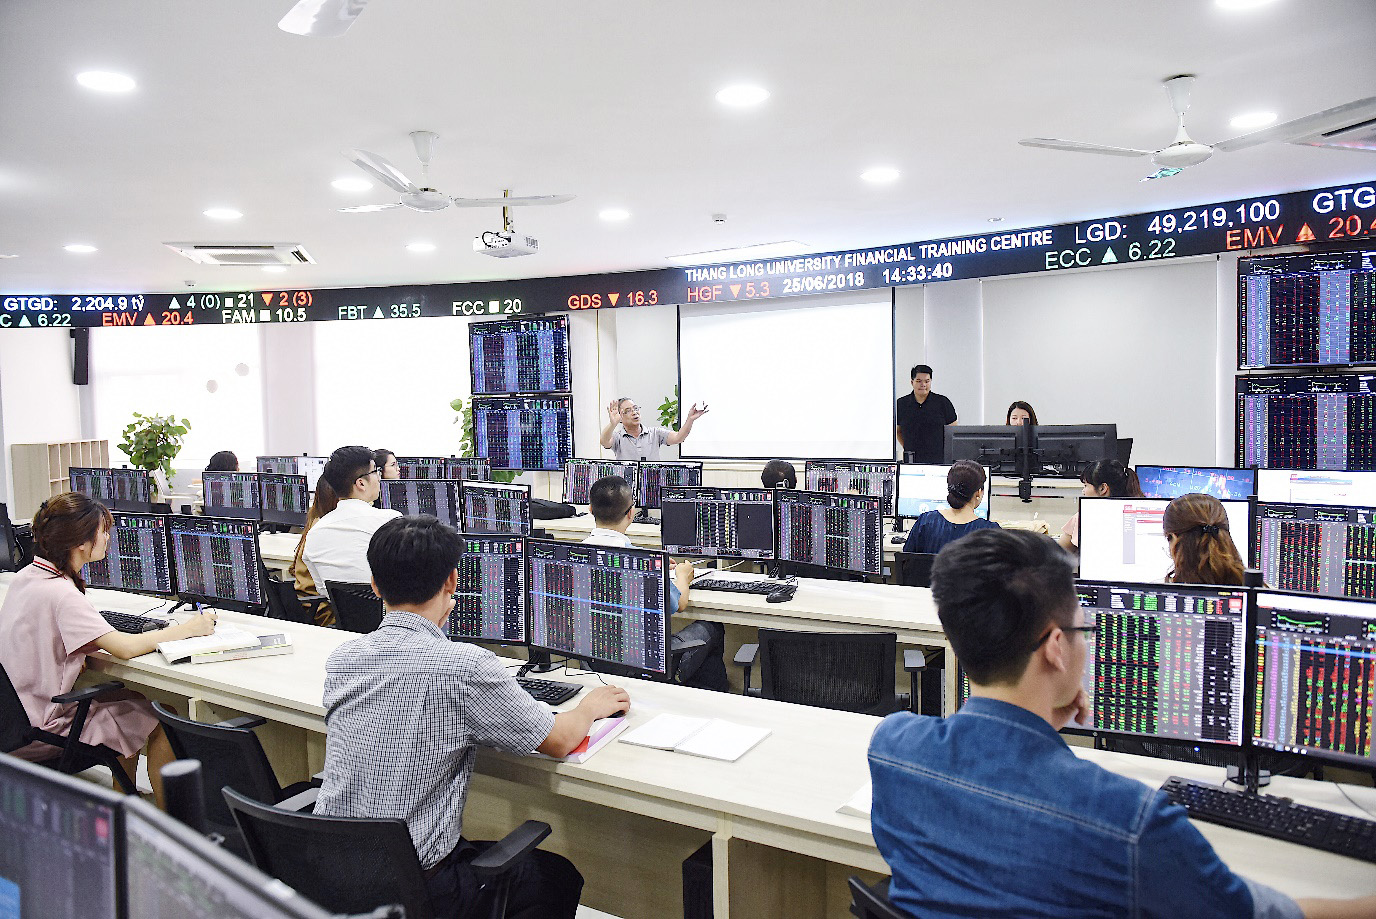 Trung tâm Thực hành tài chính, một dạng phòng học mô phỏng dành cho sinh viên khối ngành Kinh tế - Quản lý, vừa được Đại học Thăng Long đưa vào sử dụng từ giữa năm 2018. Ảnh: kenh14.vn